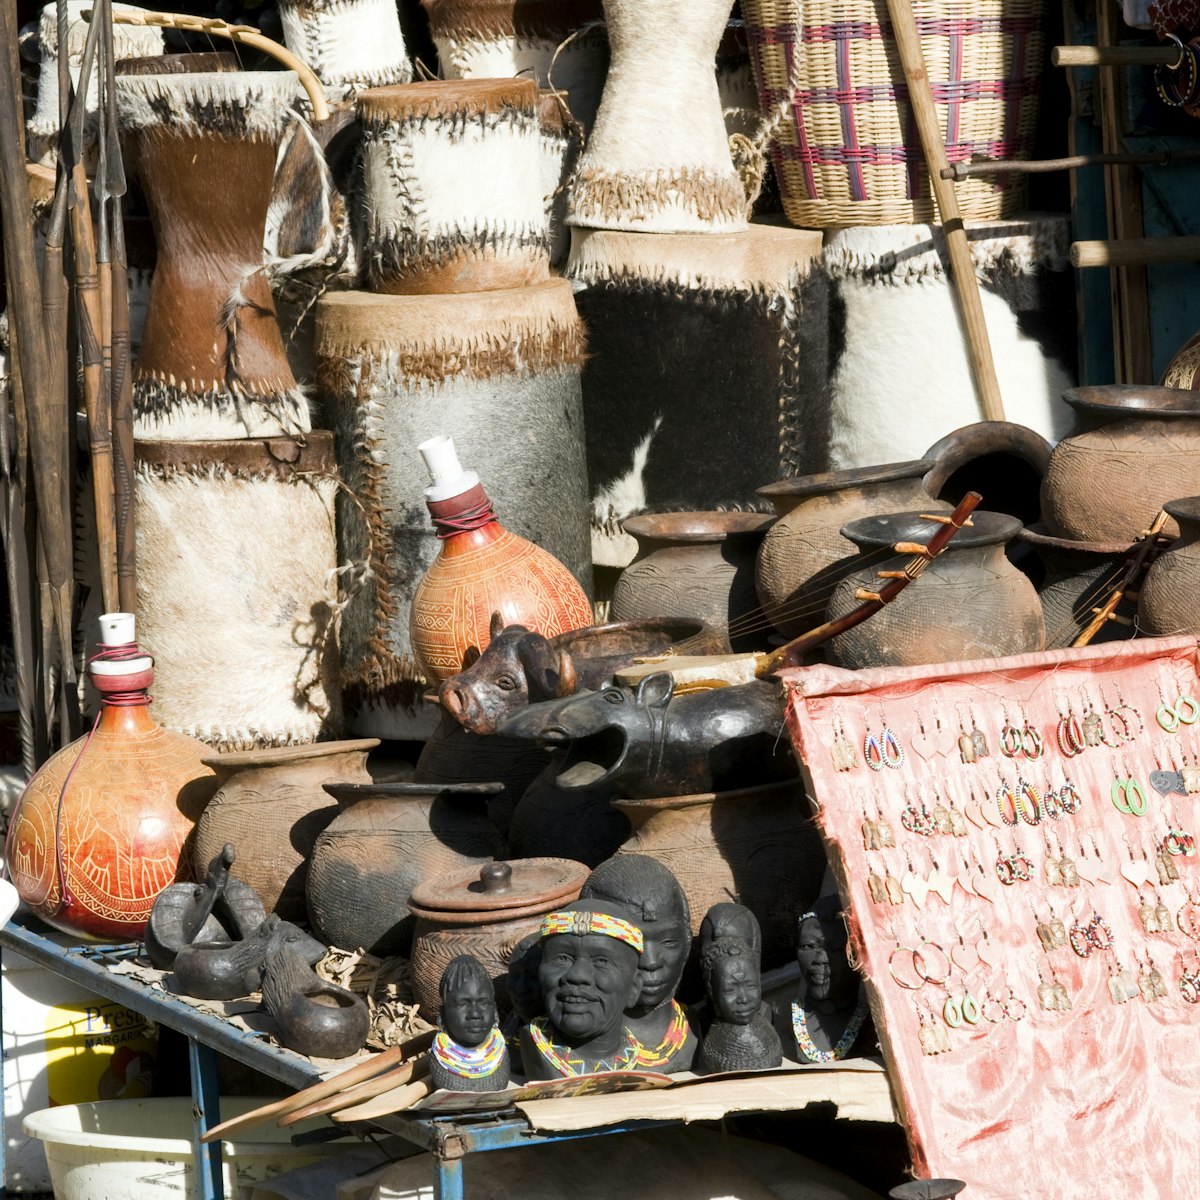 City Market craft stalls, Nairobi, Kenya